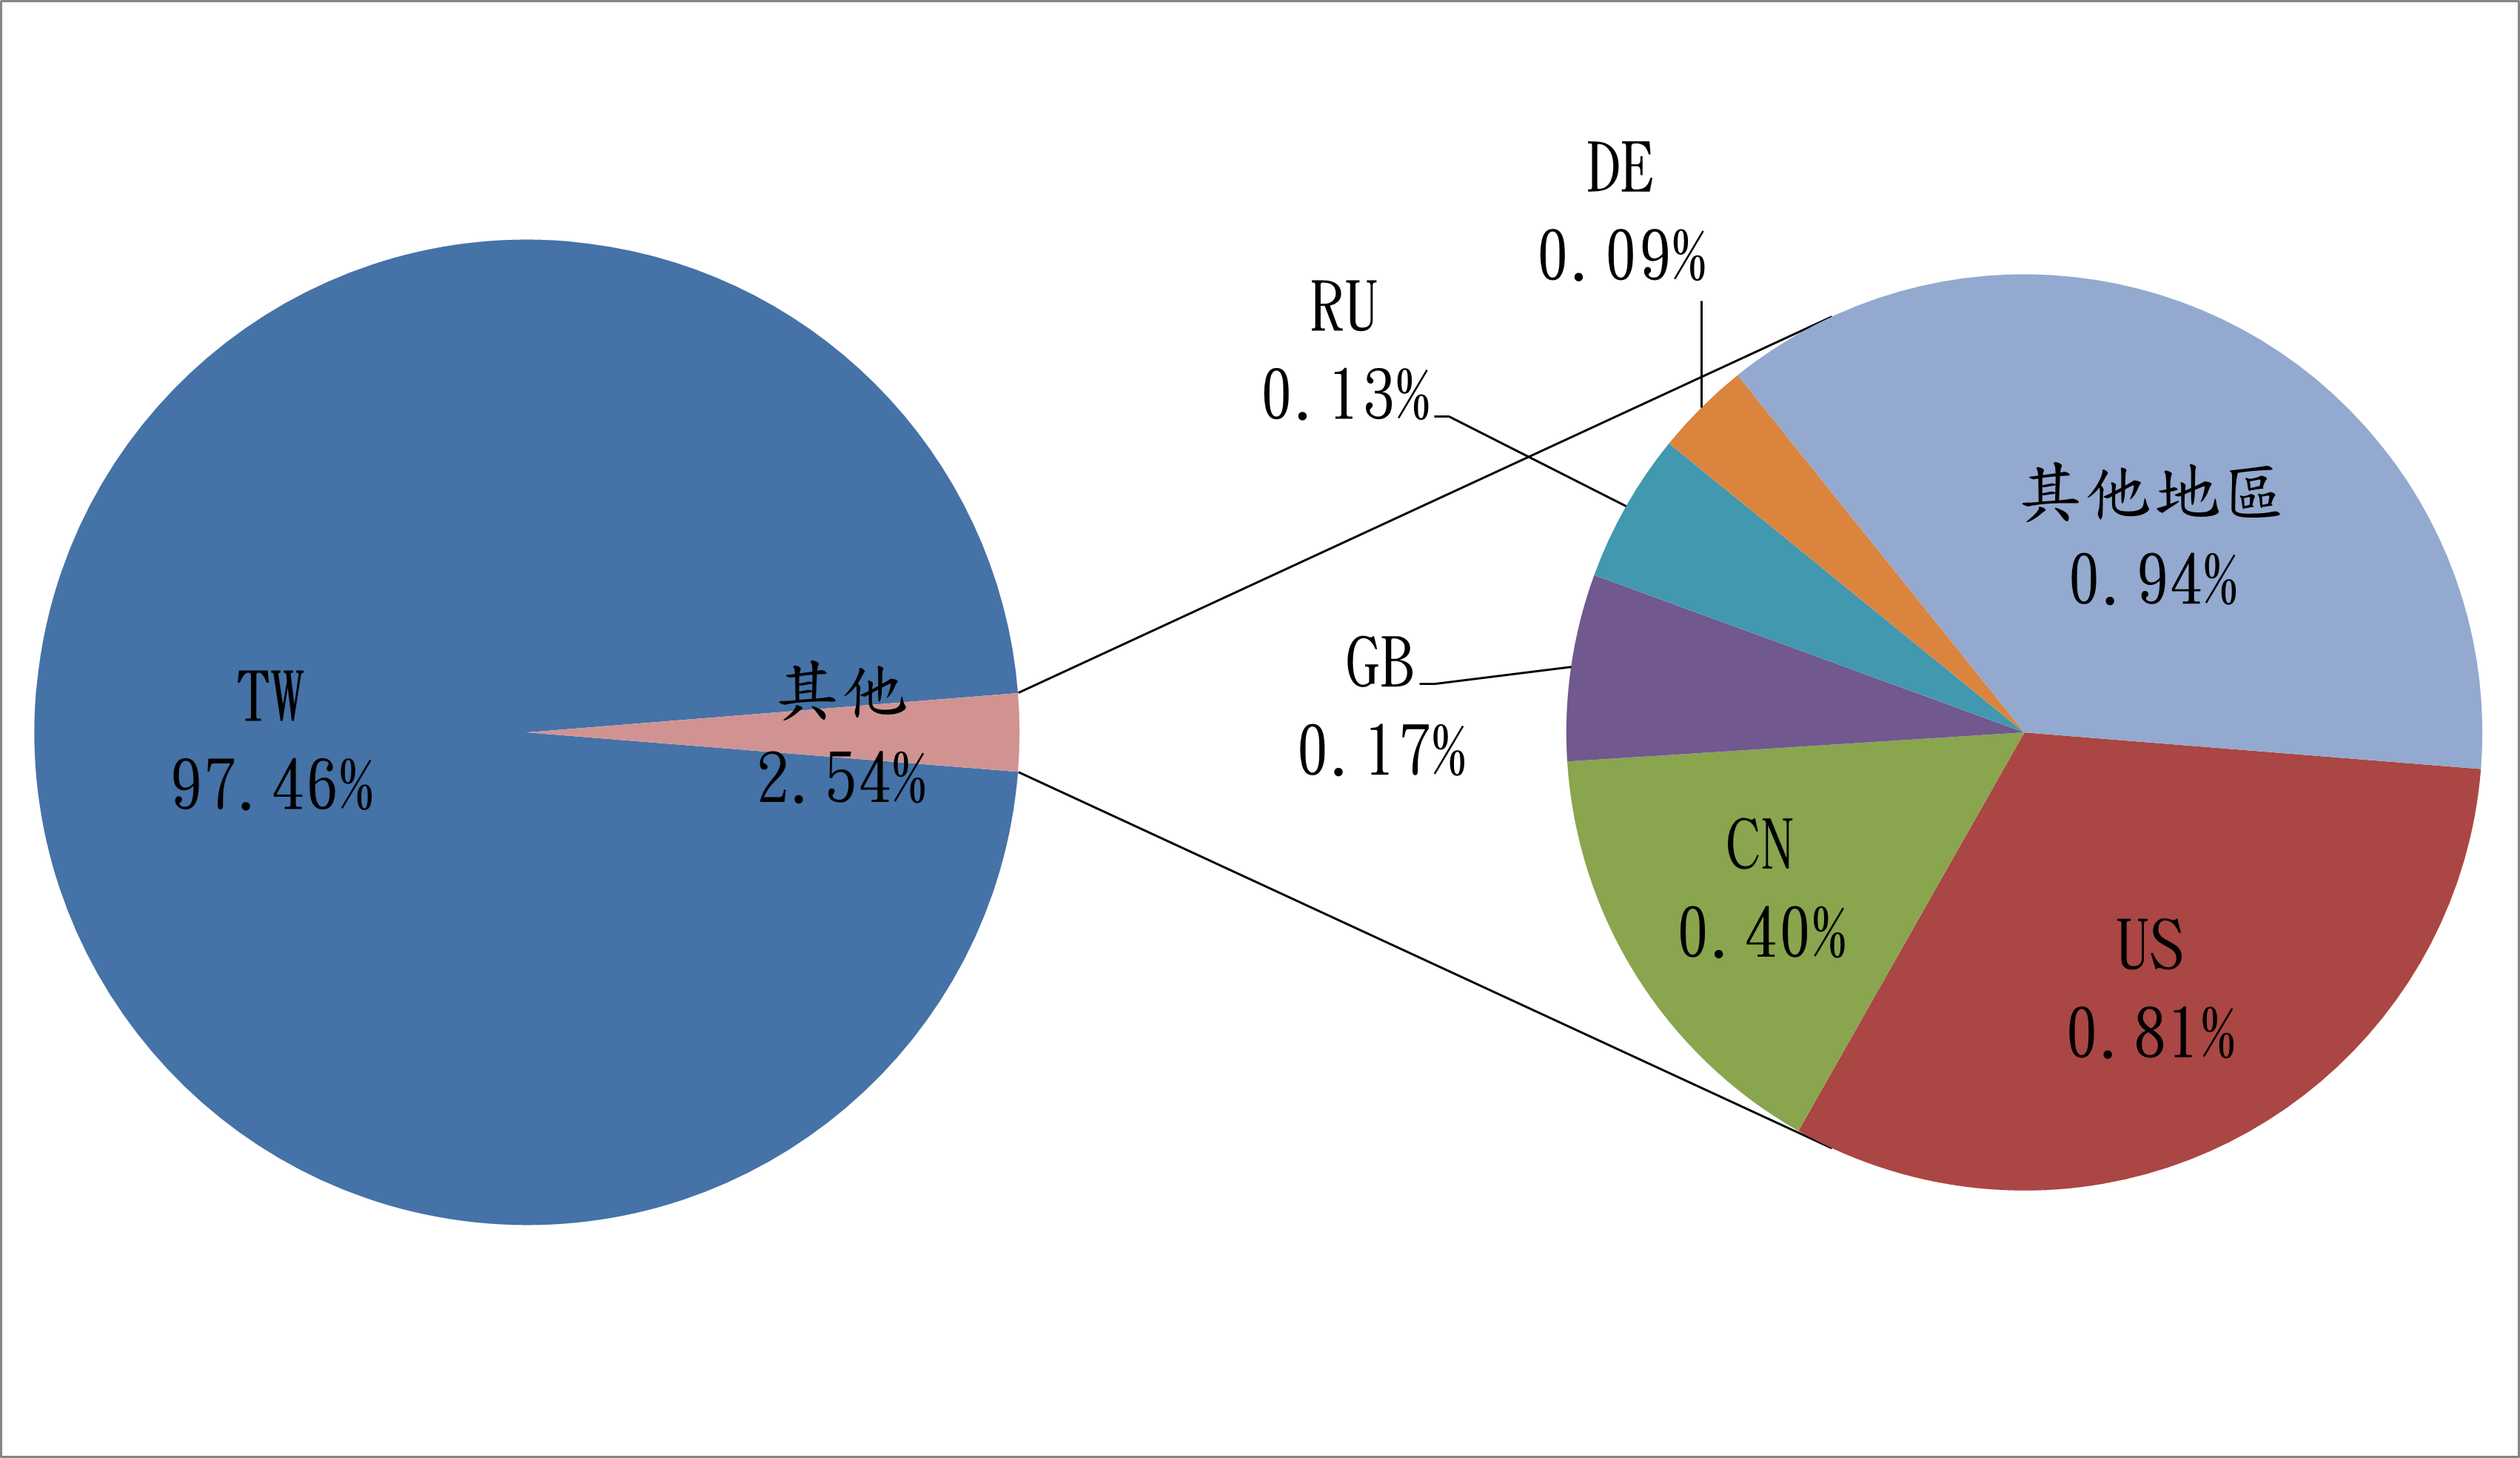 TW97.46% 其他2.54% DE0.09% RU0.13% GB0.17% CN0.4% US0.81% 其他地區0.94%